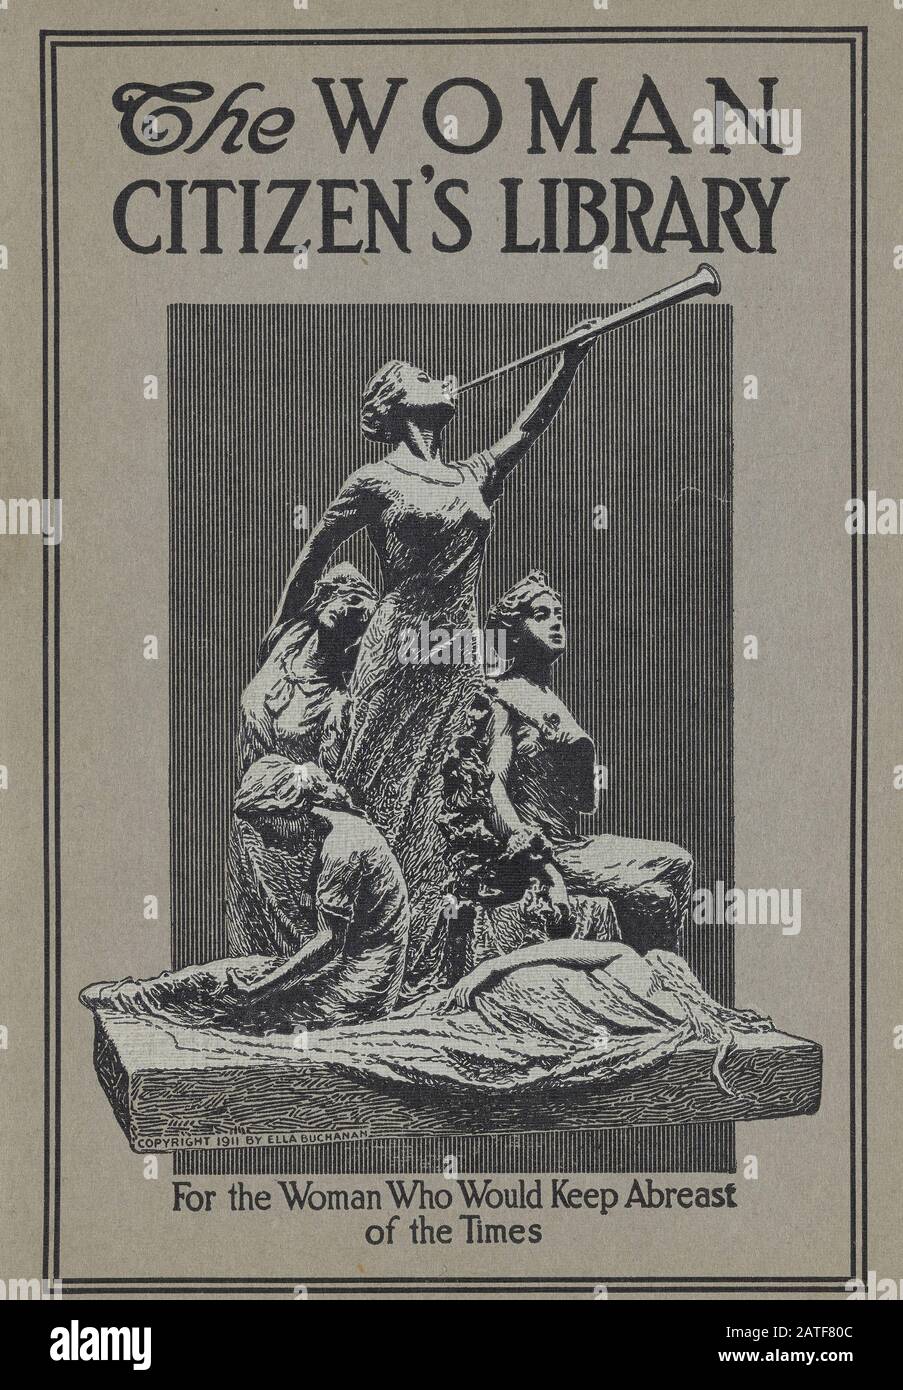 The Woman Citizen's Library - suffragio femminile negli Stati Uniti 1840' 1920' Foto Stock